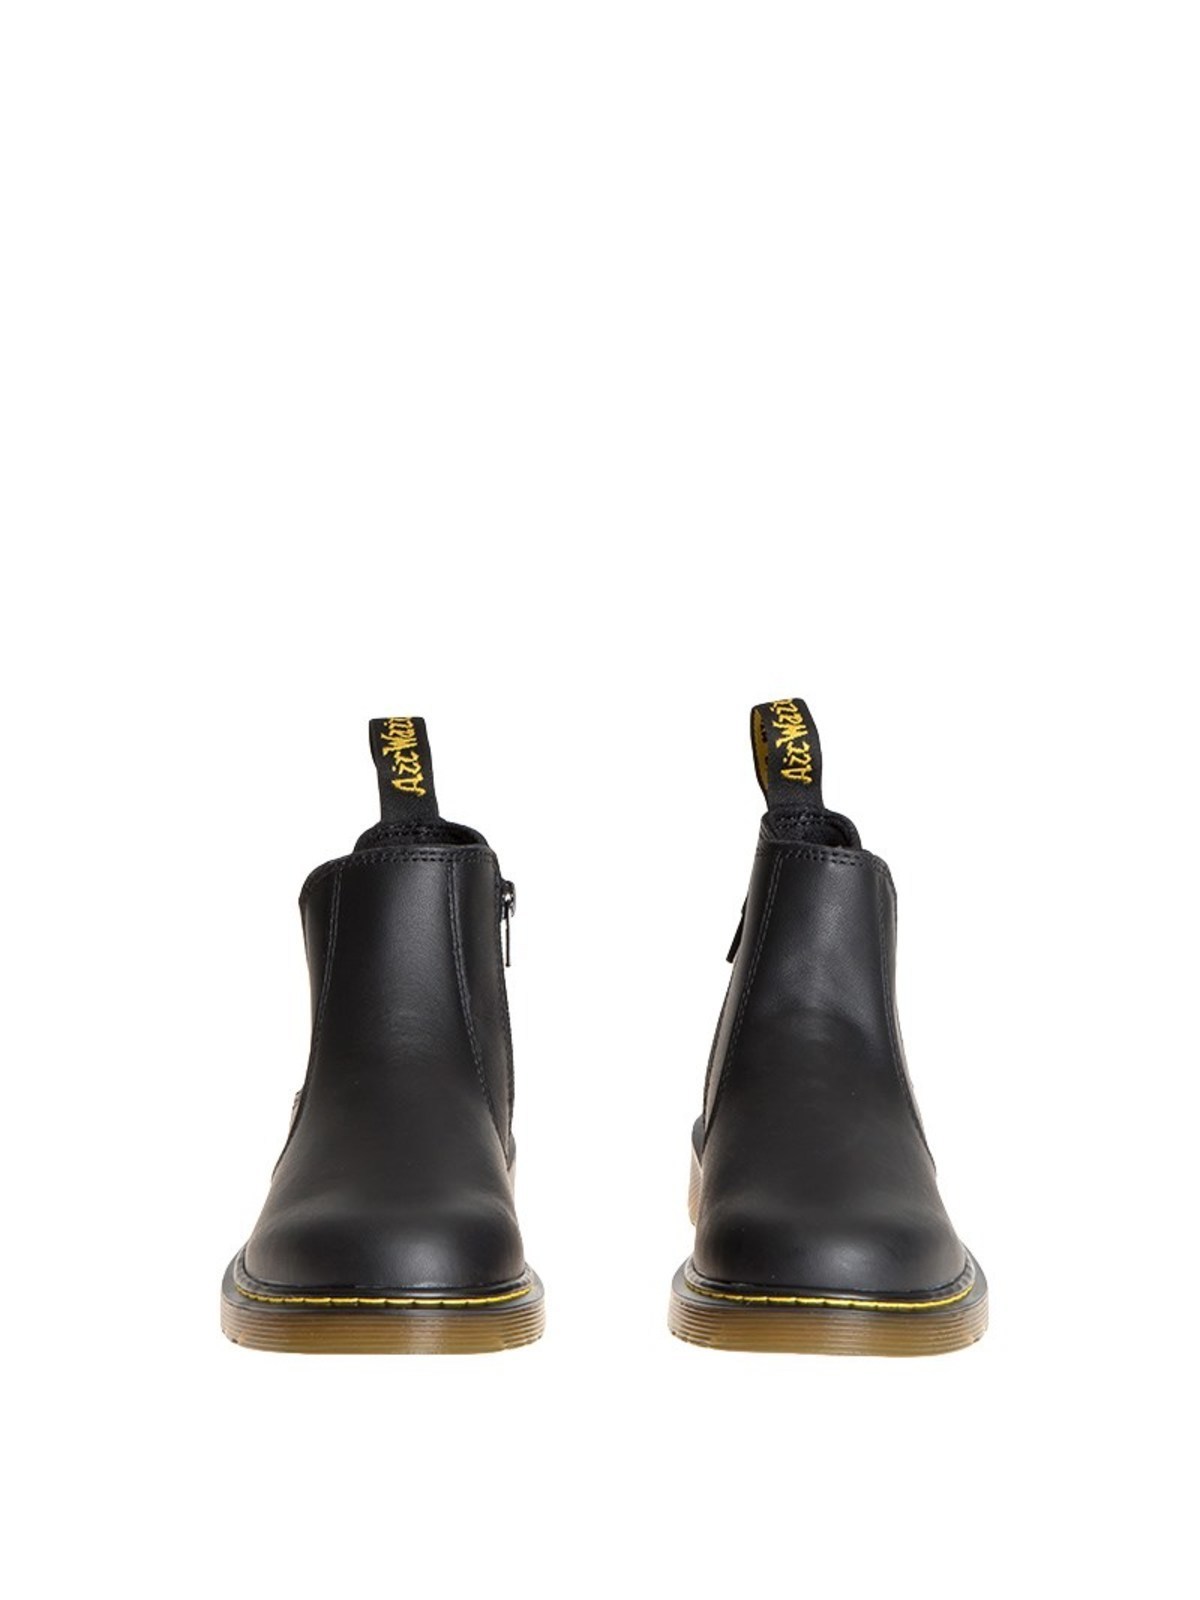 højdepunkt eksperimentel Frugtbar Ankle boots Dr. Martens - Banzai boots - 16708001 | Shop online at iKRIX